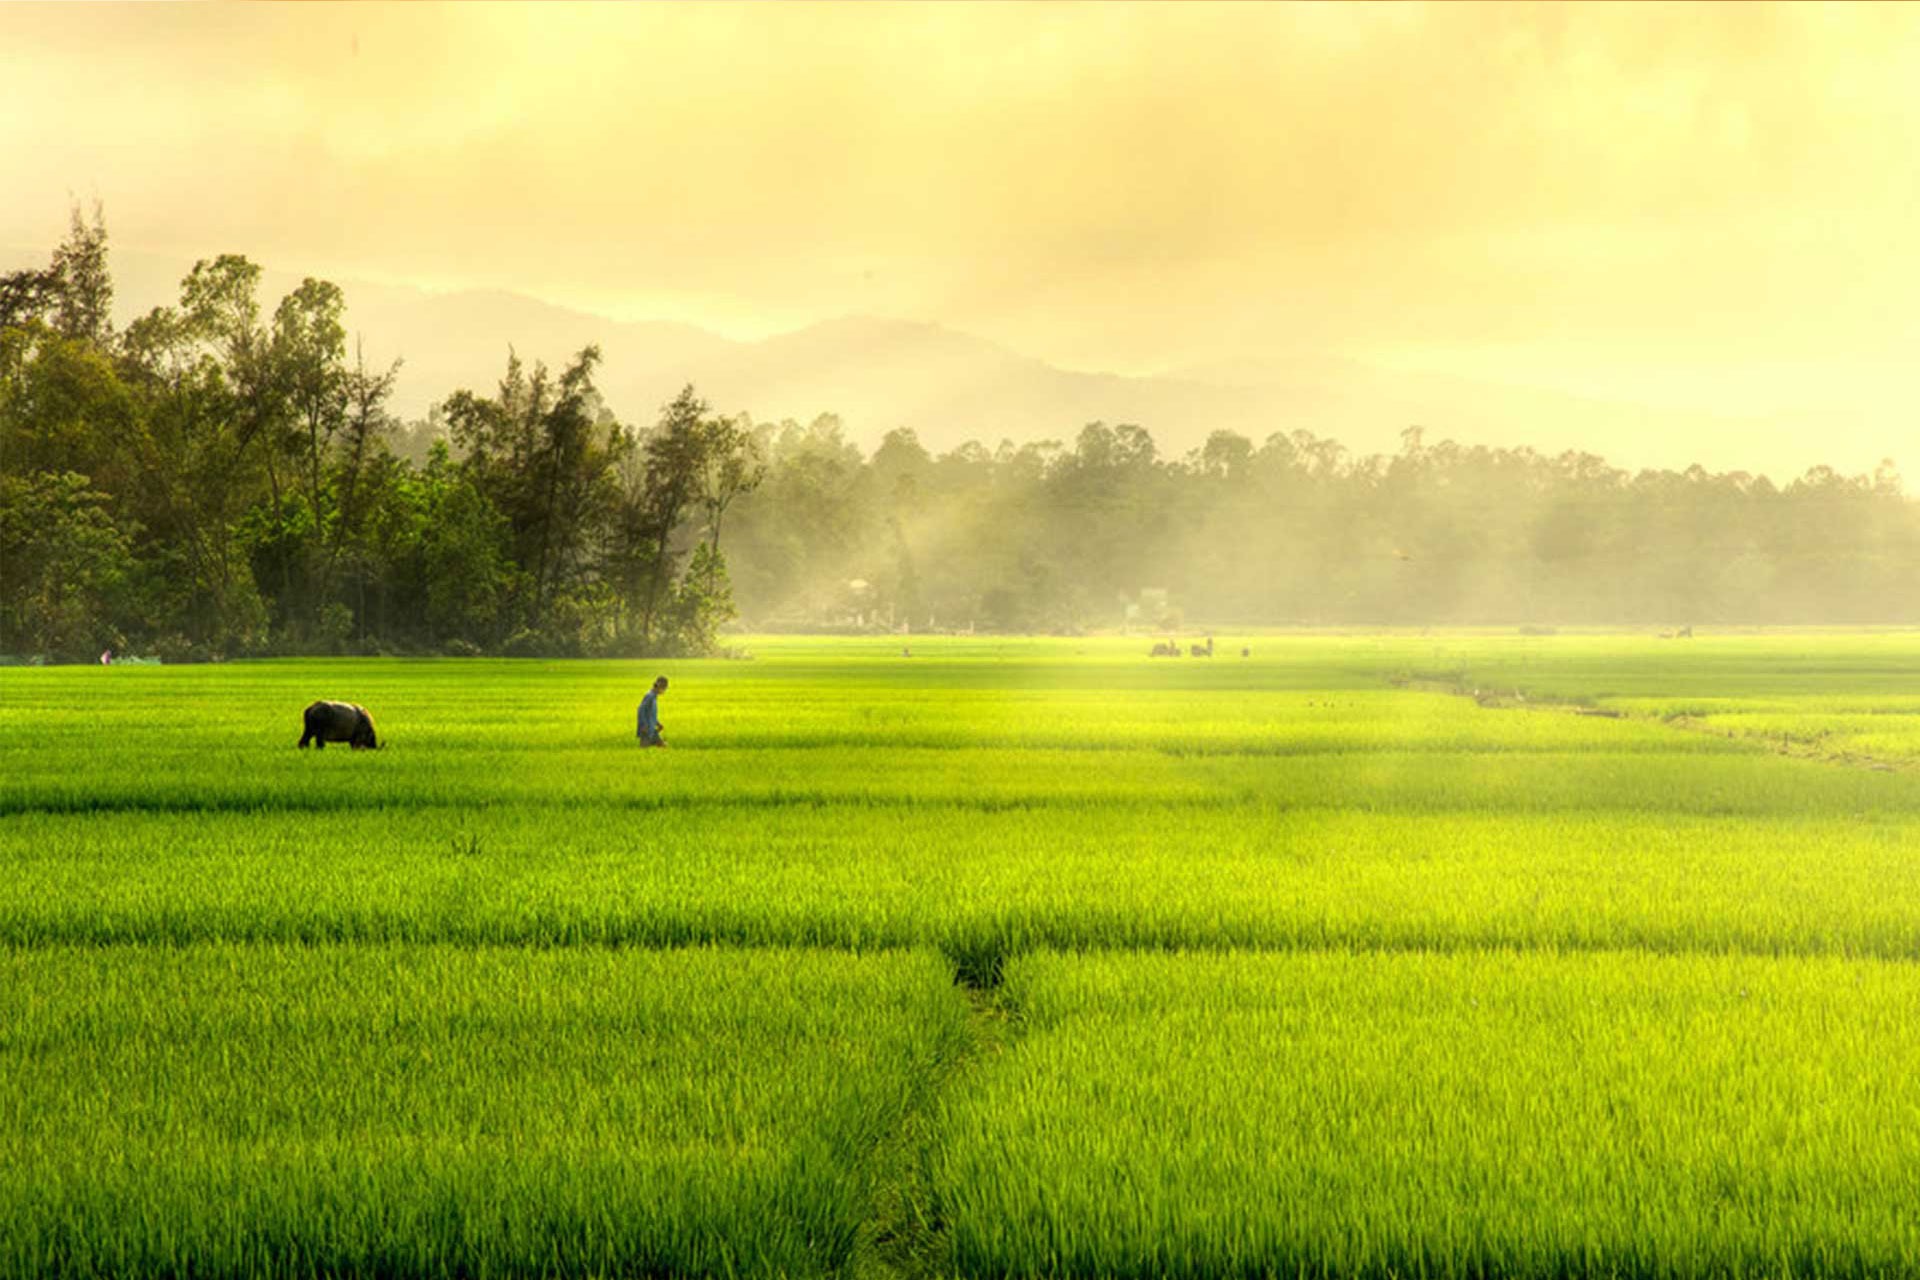 Những đàn gà đang chạy nhảy trên cánh đồng, người nông dân đang làm việc vất vả, những đứa trẻ cùng nhau chơi đùa... Tất cả những hình ảnh đó sẽ mang bạn đến cảm giác đầy tình yêu thương về làng quê Việt Nam.